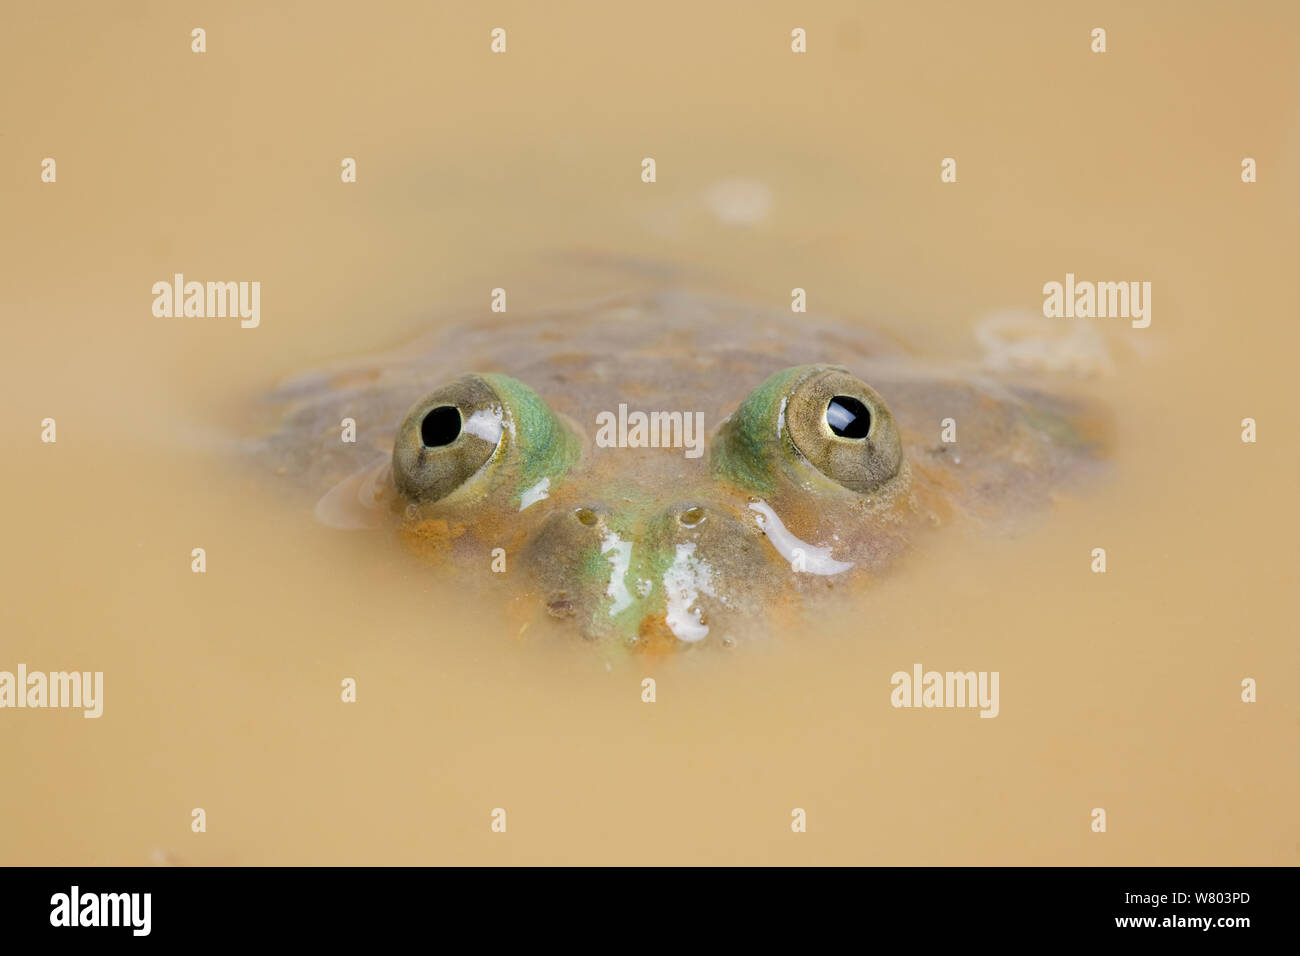 Budgett&# 39;s Frog (Lepidobatrachus laevis) surtout submergés dans l'eau boueuse, avec les yeux visibles au-dessus de l'eau, captive, se produit en Amérique du Sud. Banque D'Images